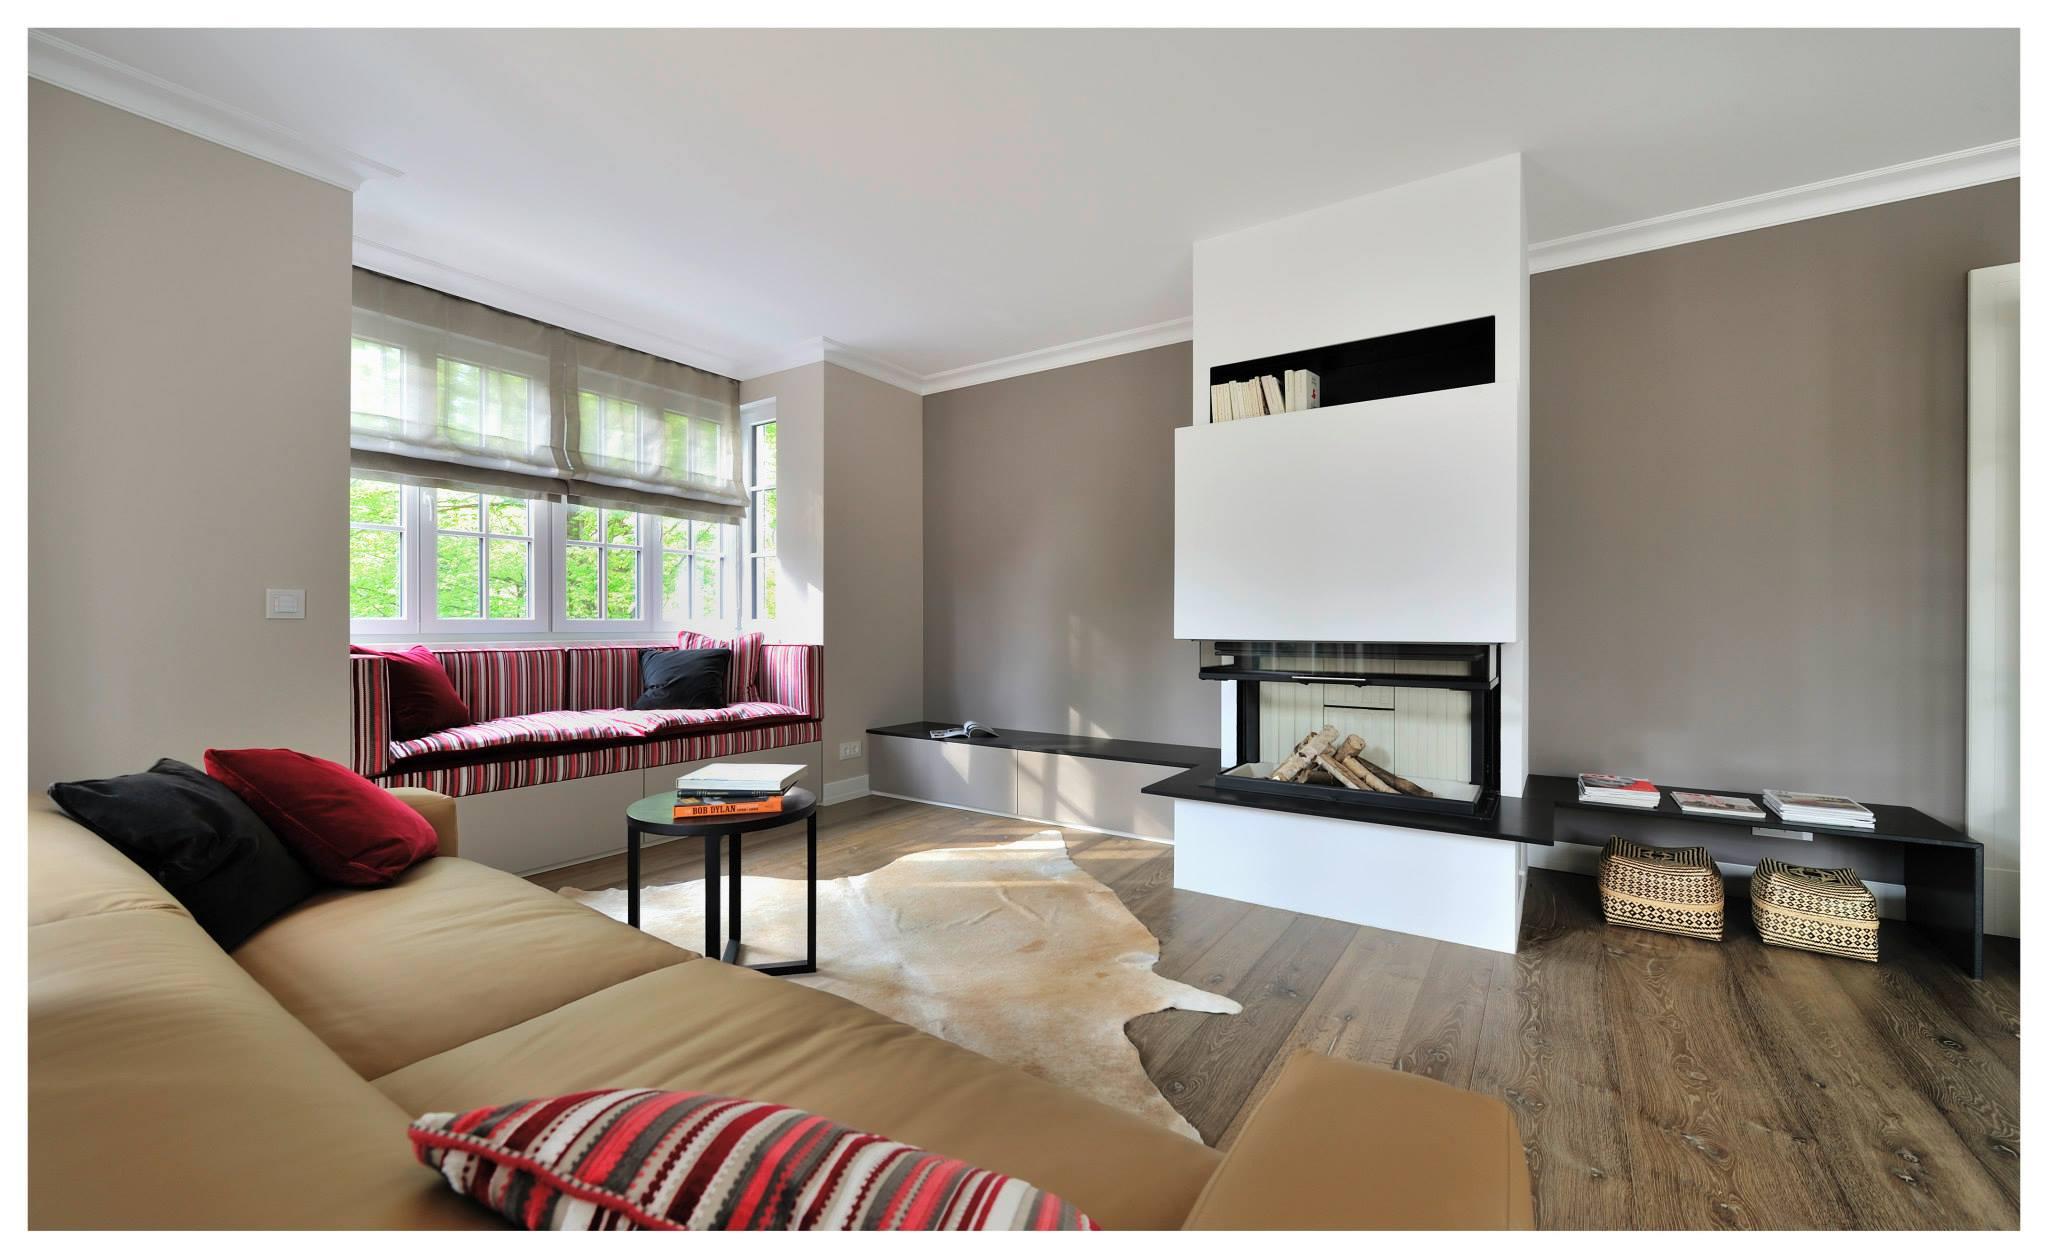 Familienvilla in Grünwald #ablage #kamin #wohnzimmer #zimmergestaltung ©Heerwagen Design Consulting